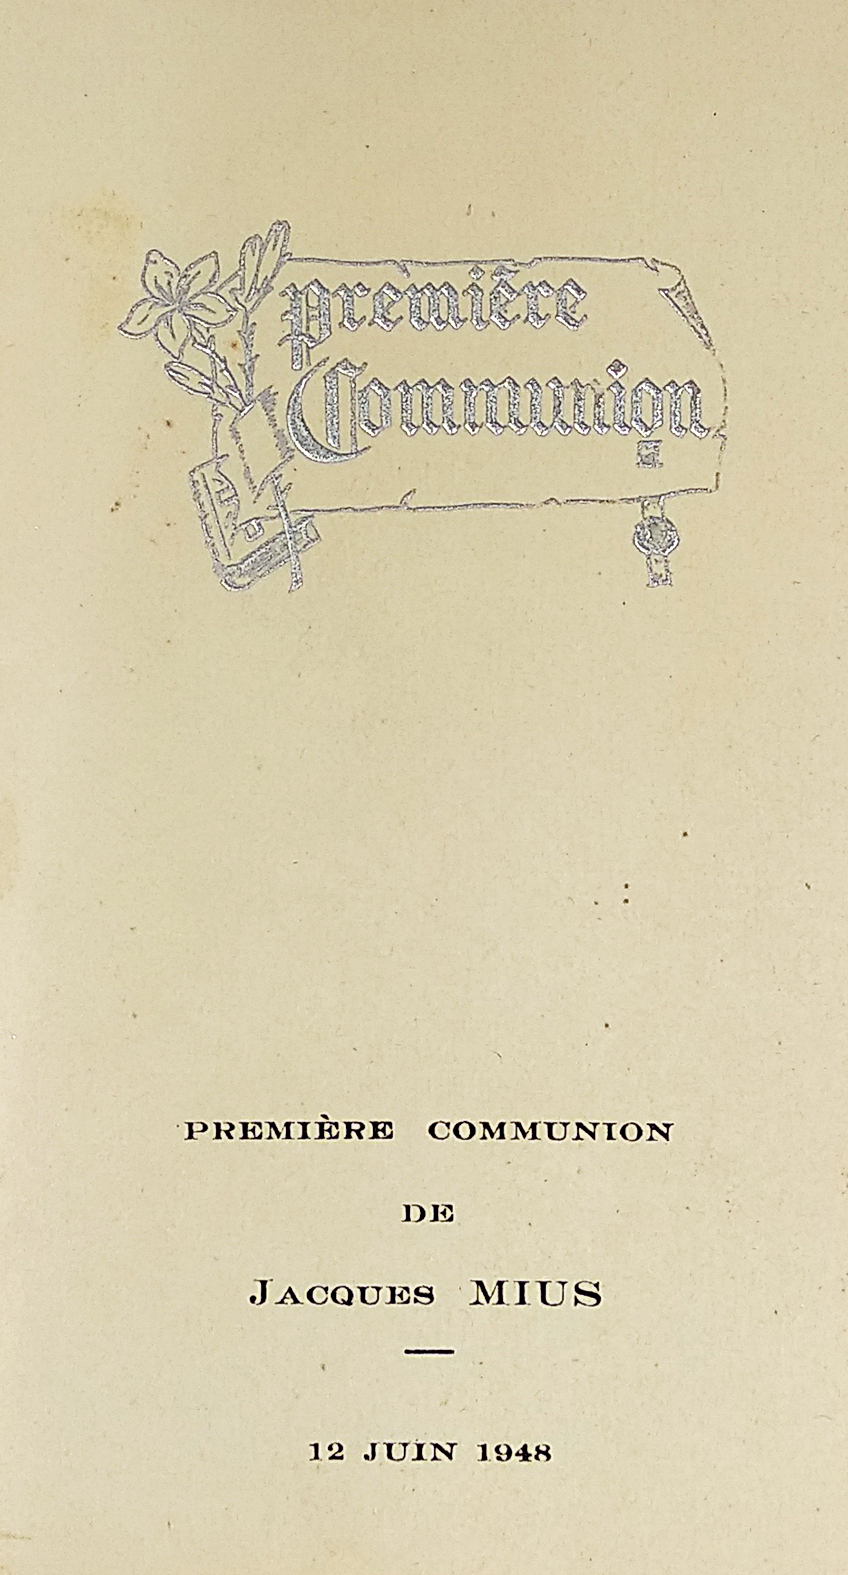 Première Communion de Jacques MIUS. 12 Juin 1948. - Vintage Print from 1948